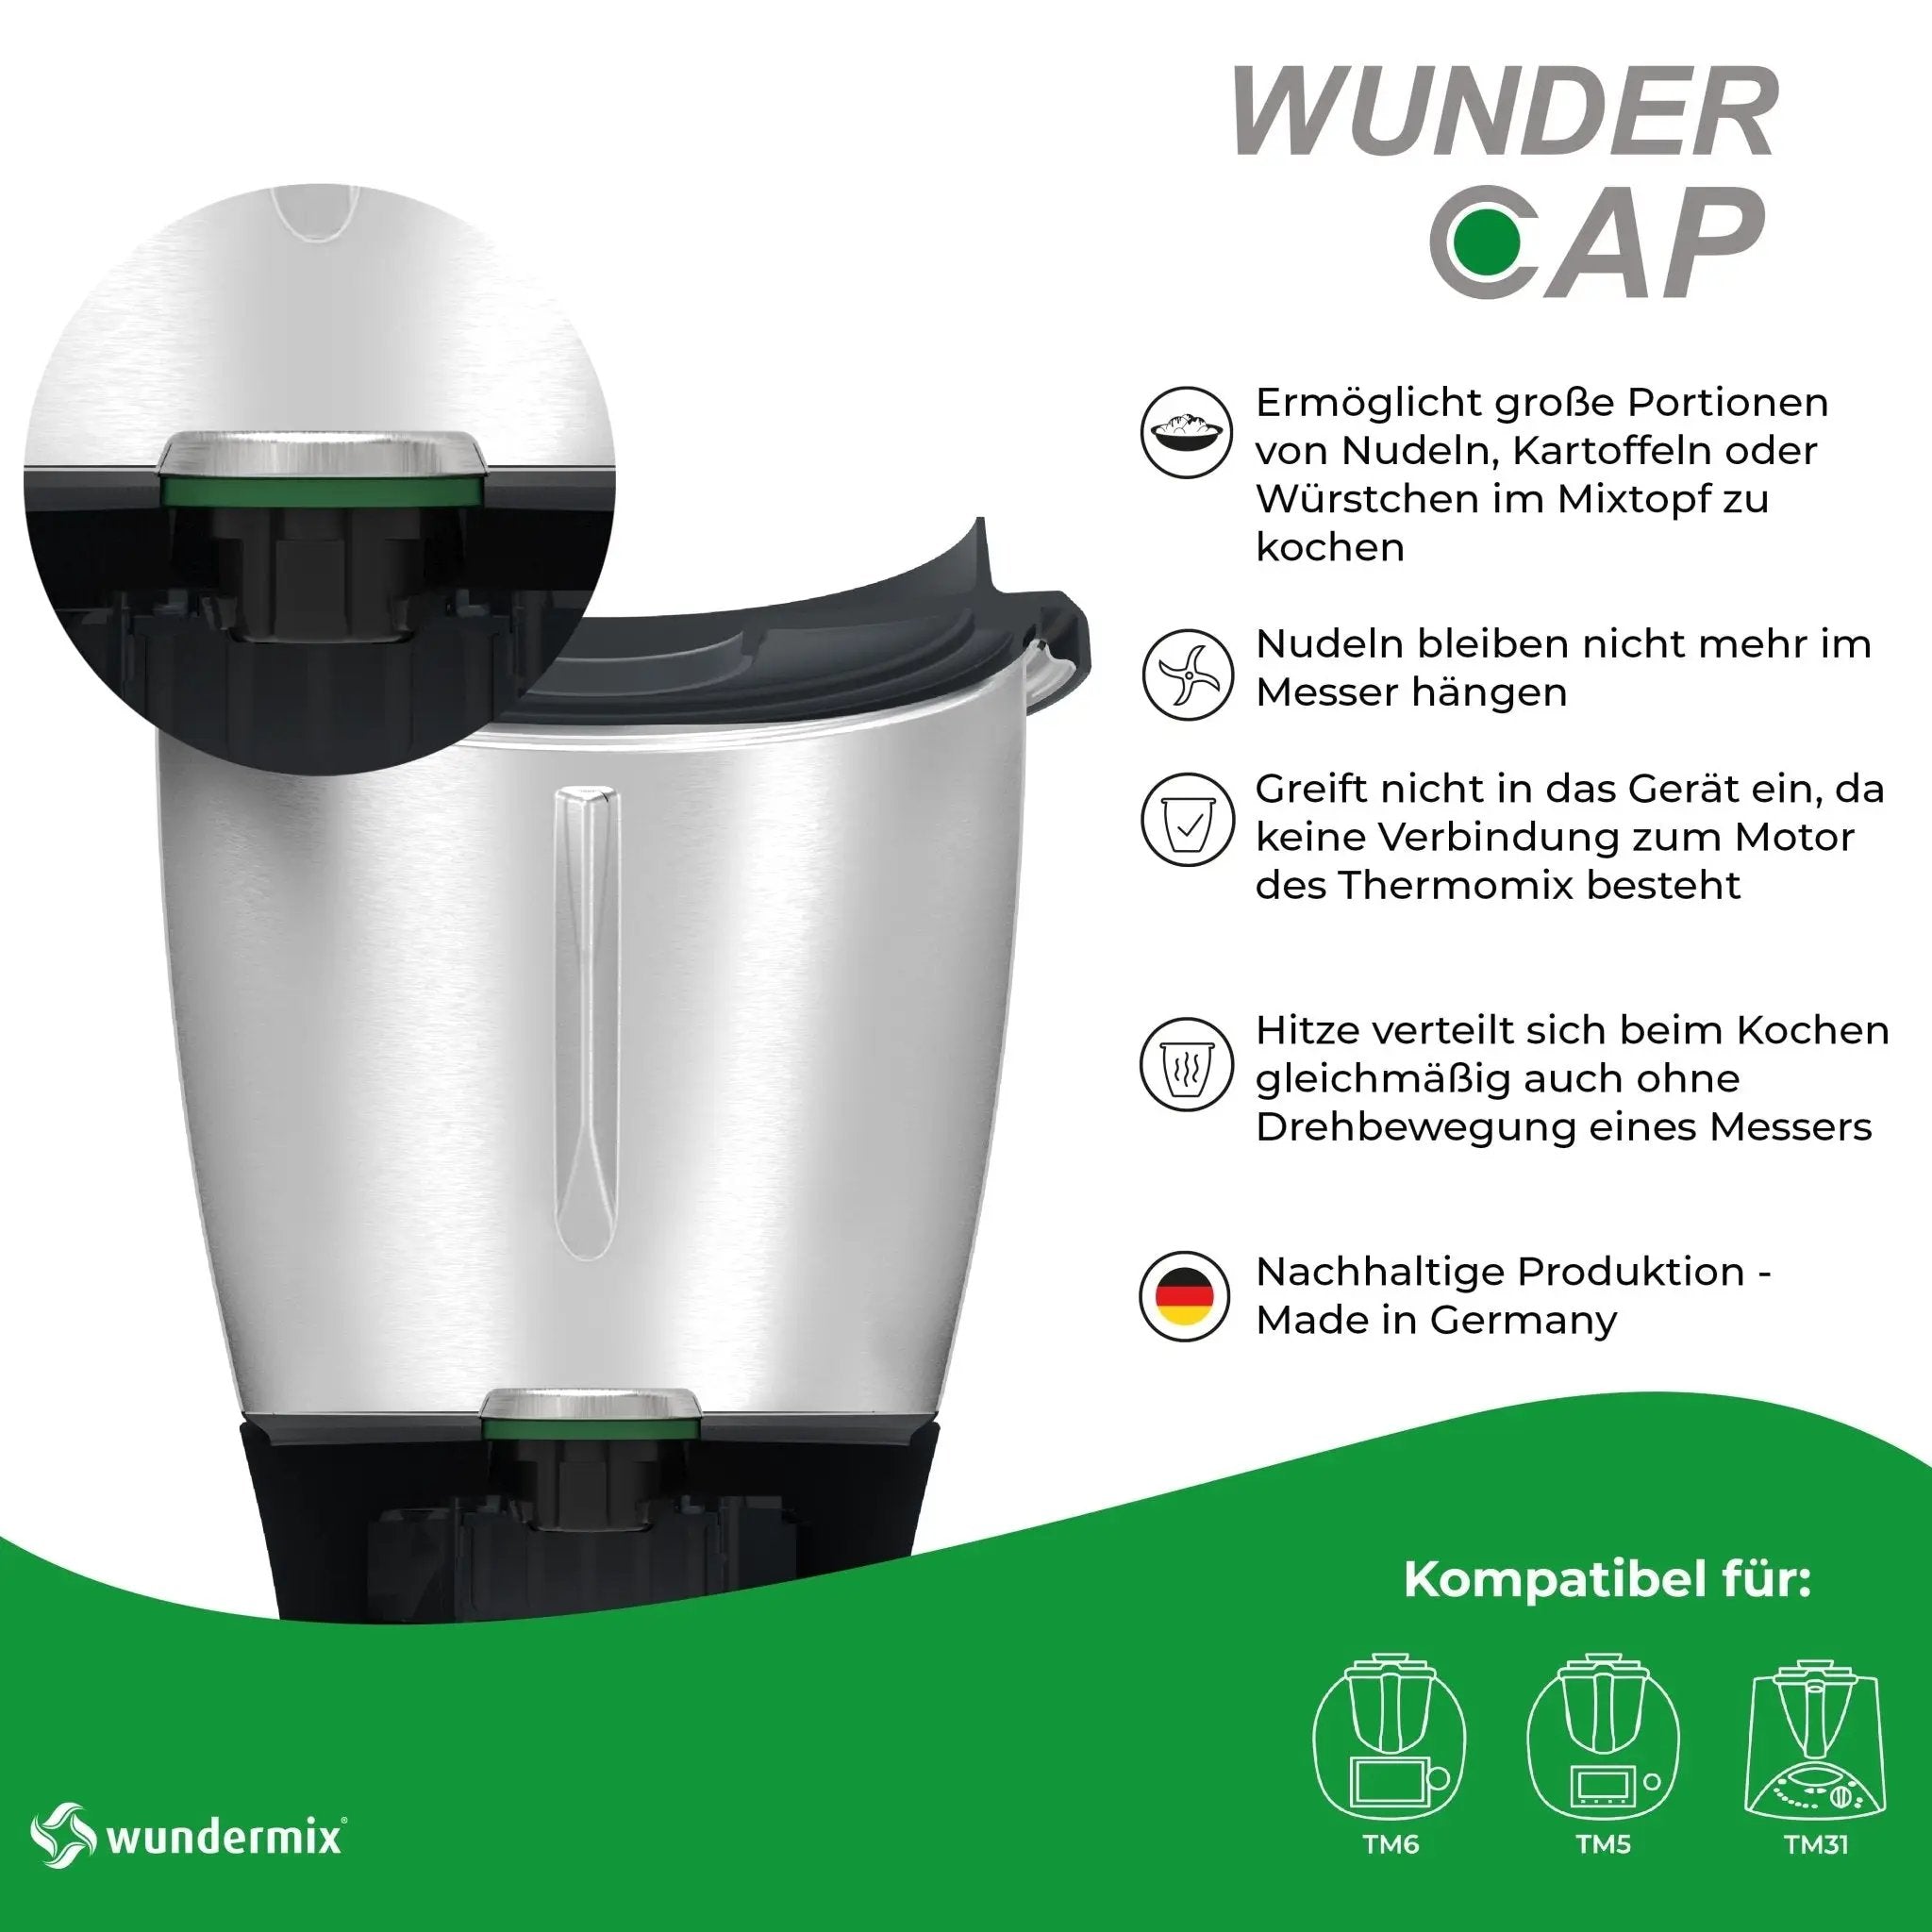 [B-Ware] WunderCap® | Der revolutionäre Thermomix-Messerersatz - Wundermix GmbH